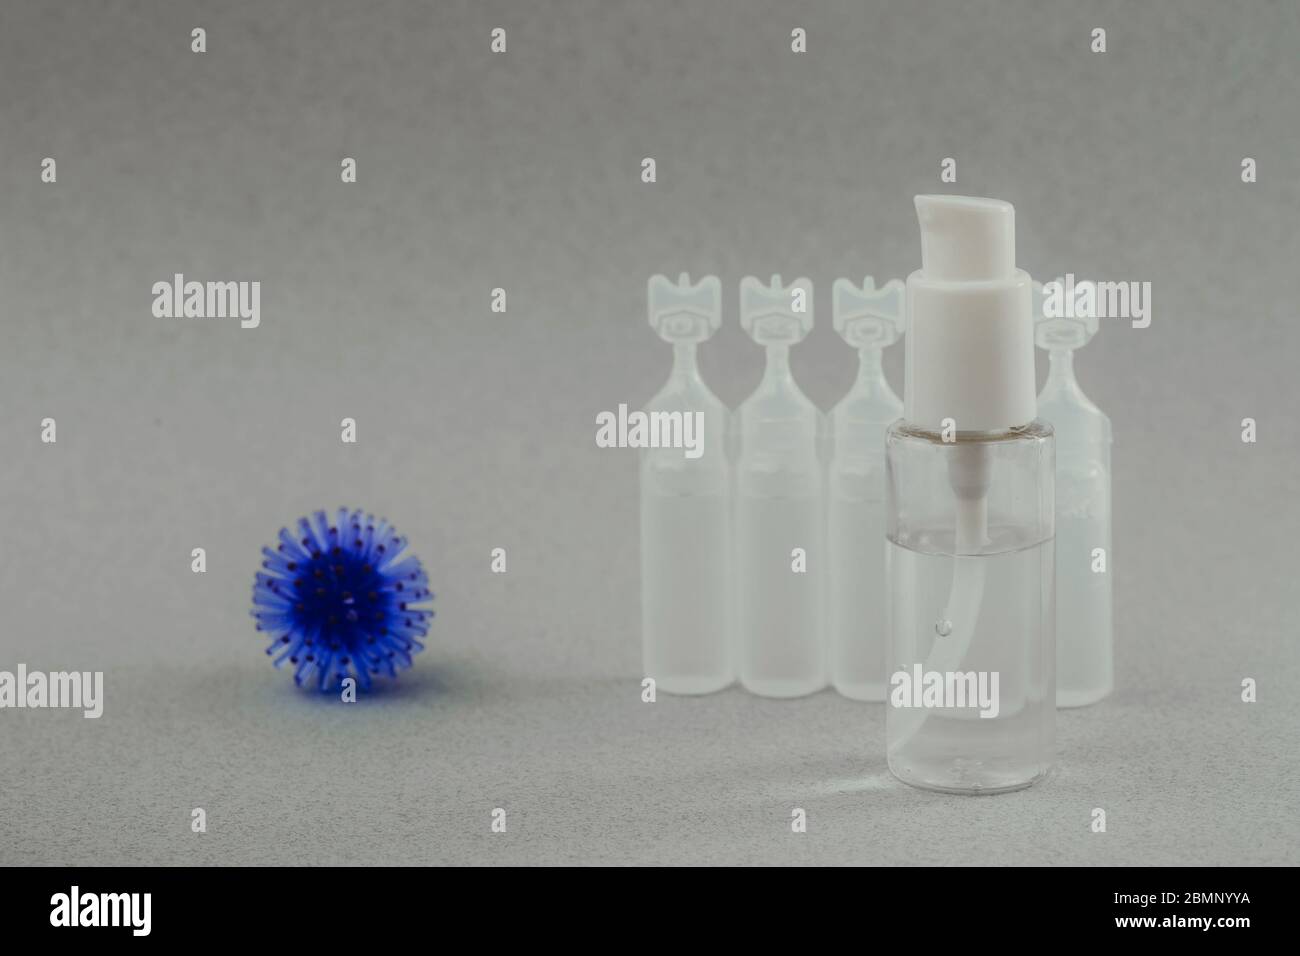 Modèle abstrait du coronavirus, ampoule avec médicament et flacon avec gel antibactérien pour les mains sur fond gris. Concept d'hygiène. Banque D'Images